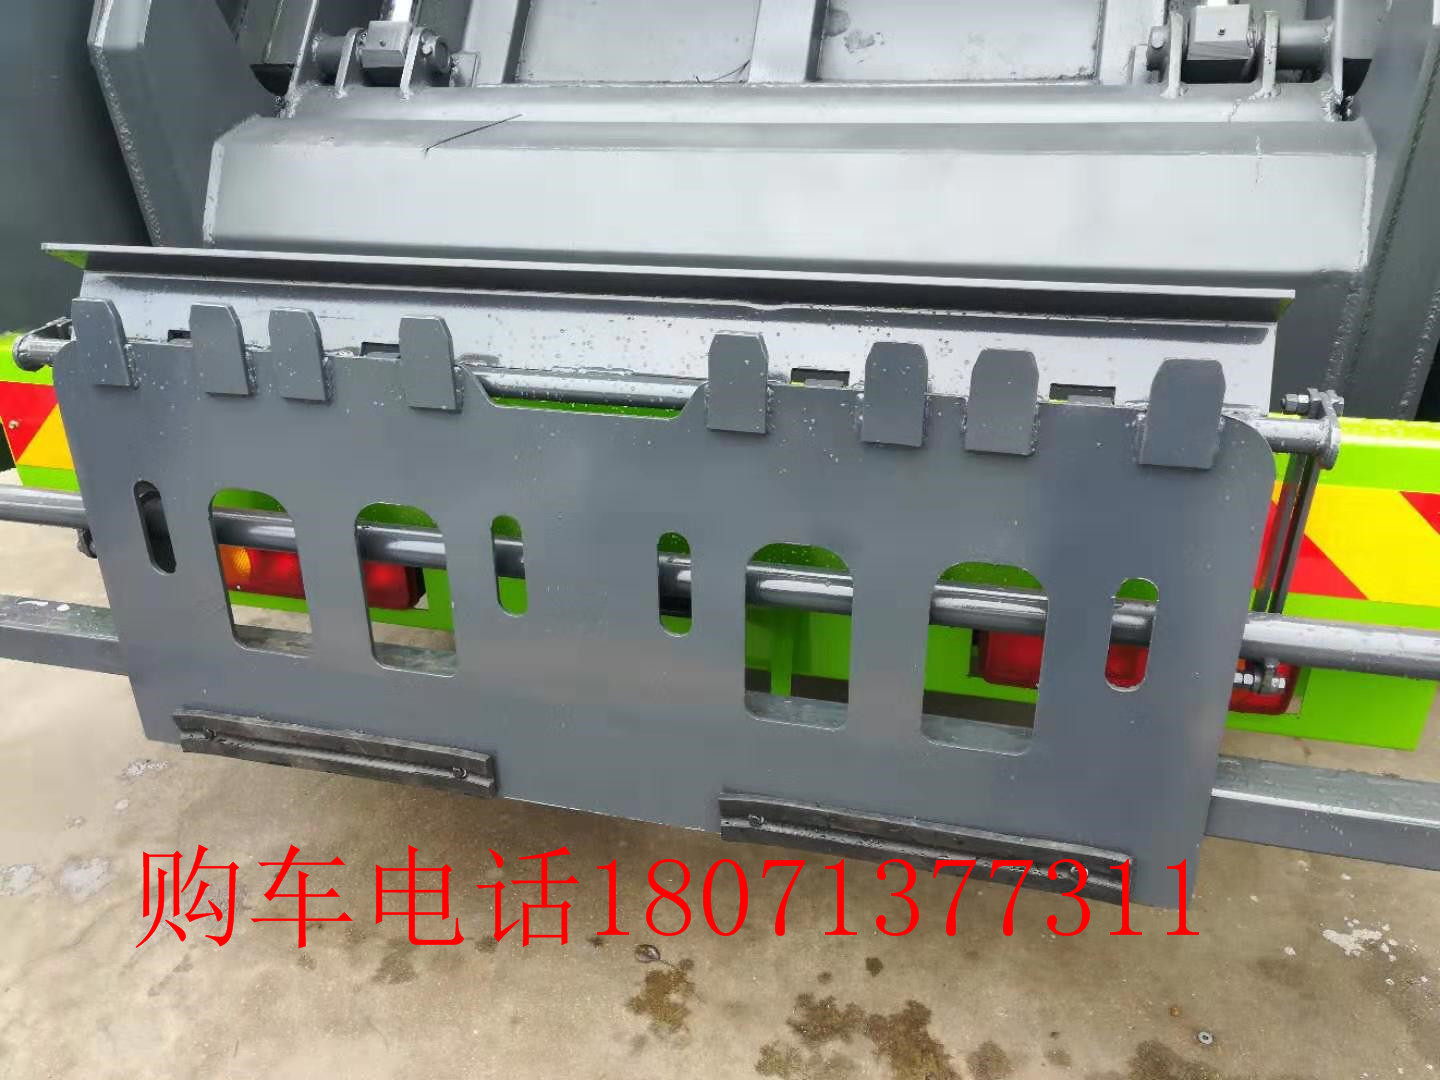 松阳县6方压缩垃圾车 出售